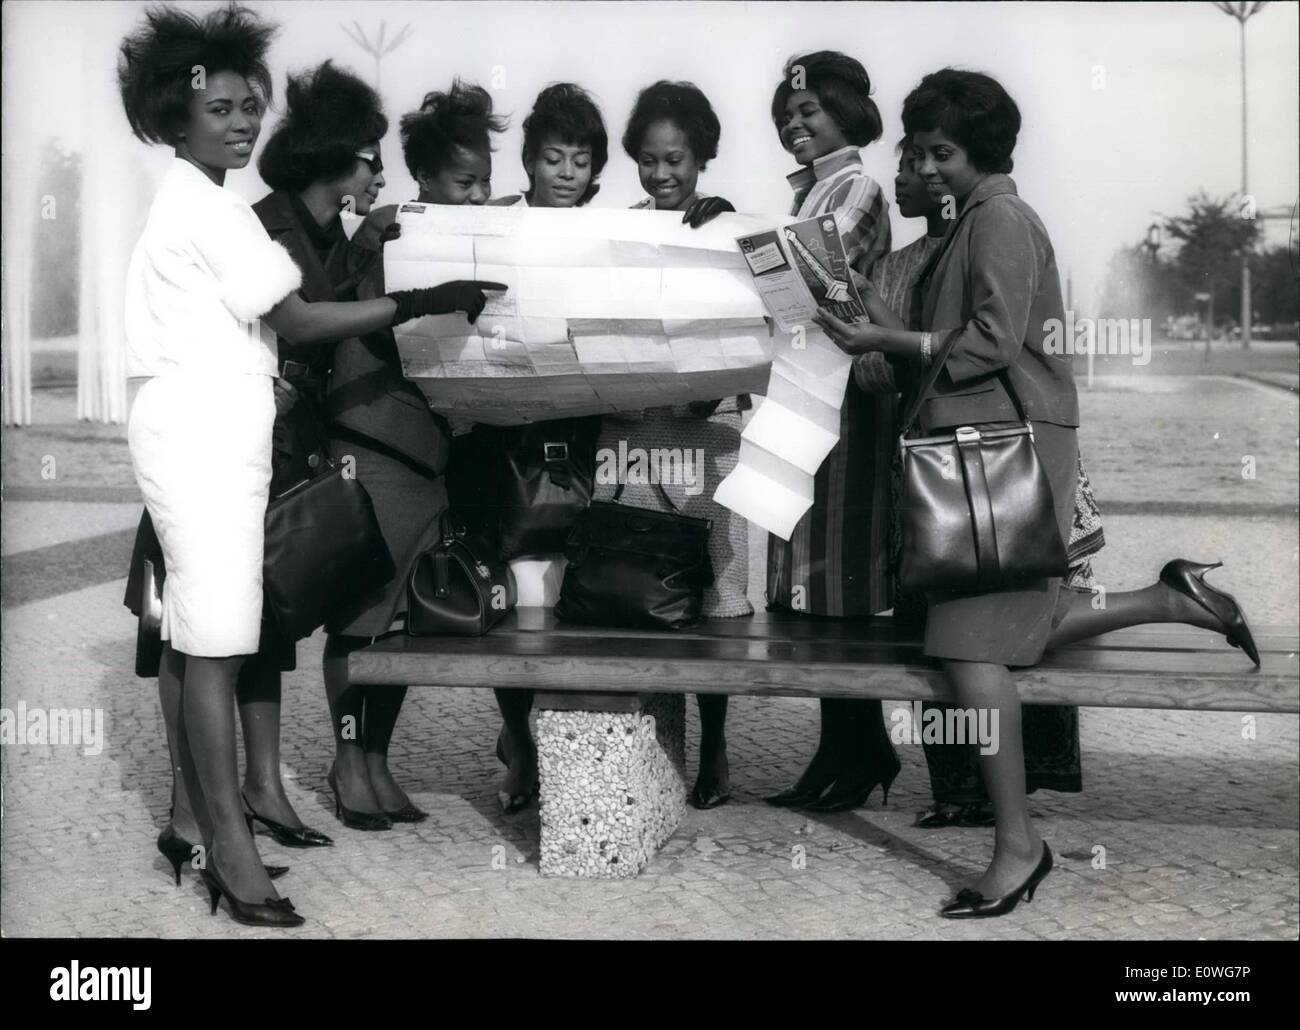 Septembre 09, 1962 - Ce huit belles mannequins noires du Ghana, du Nigeria et de la Guinée est venue à Berlin pour faire ''compétition'' pour les mannequins blancs de Berlin. Les huit beauty est venu à Berlin pour faire quelques dress parade. Les mannequins sur leur première promenade dans Berlin. Banque D'Images